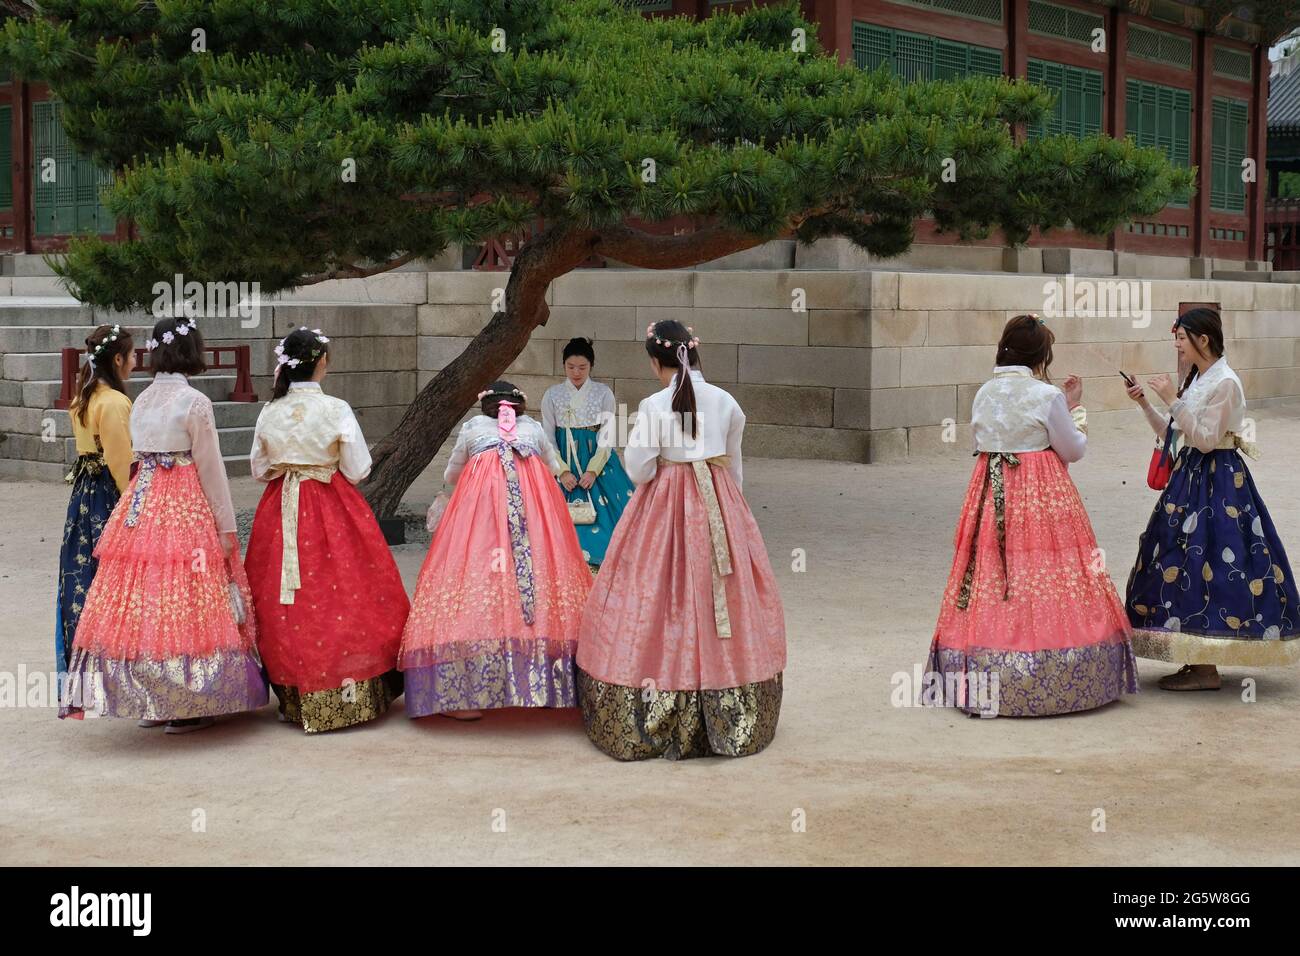 Les jeunes femmes coréennes en costumes traditionnels se sont rassemblées au Palais Gyeongbokgung ou au Palais Gyeongbok qui était le principal palais royal de la dynastie Joseon. Construit en 1395 dans la ville de Séoul, capitale de la Corée du Sud Banque D'Images